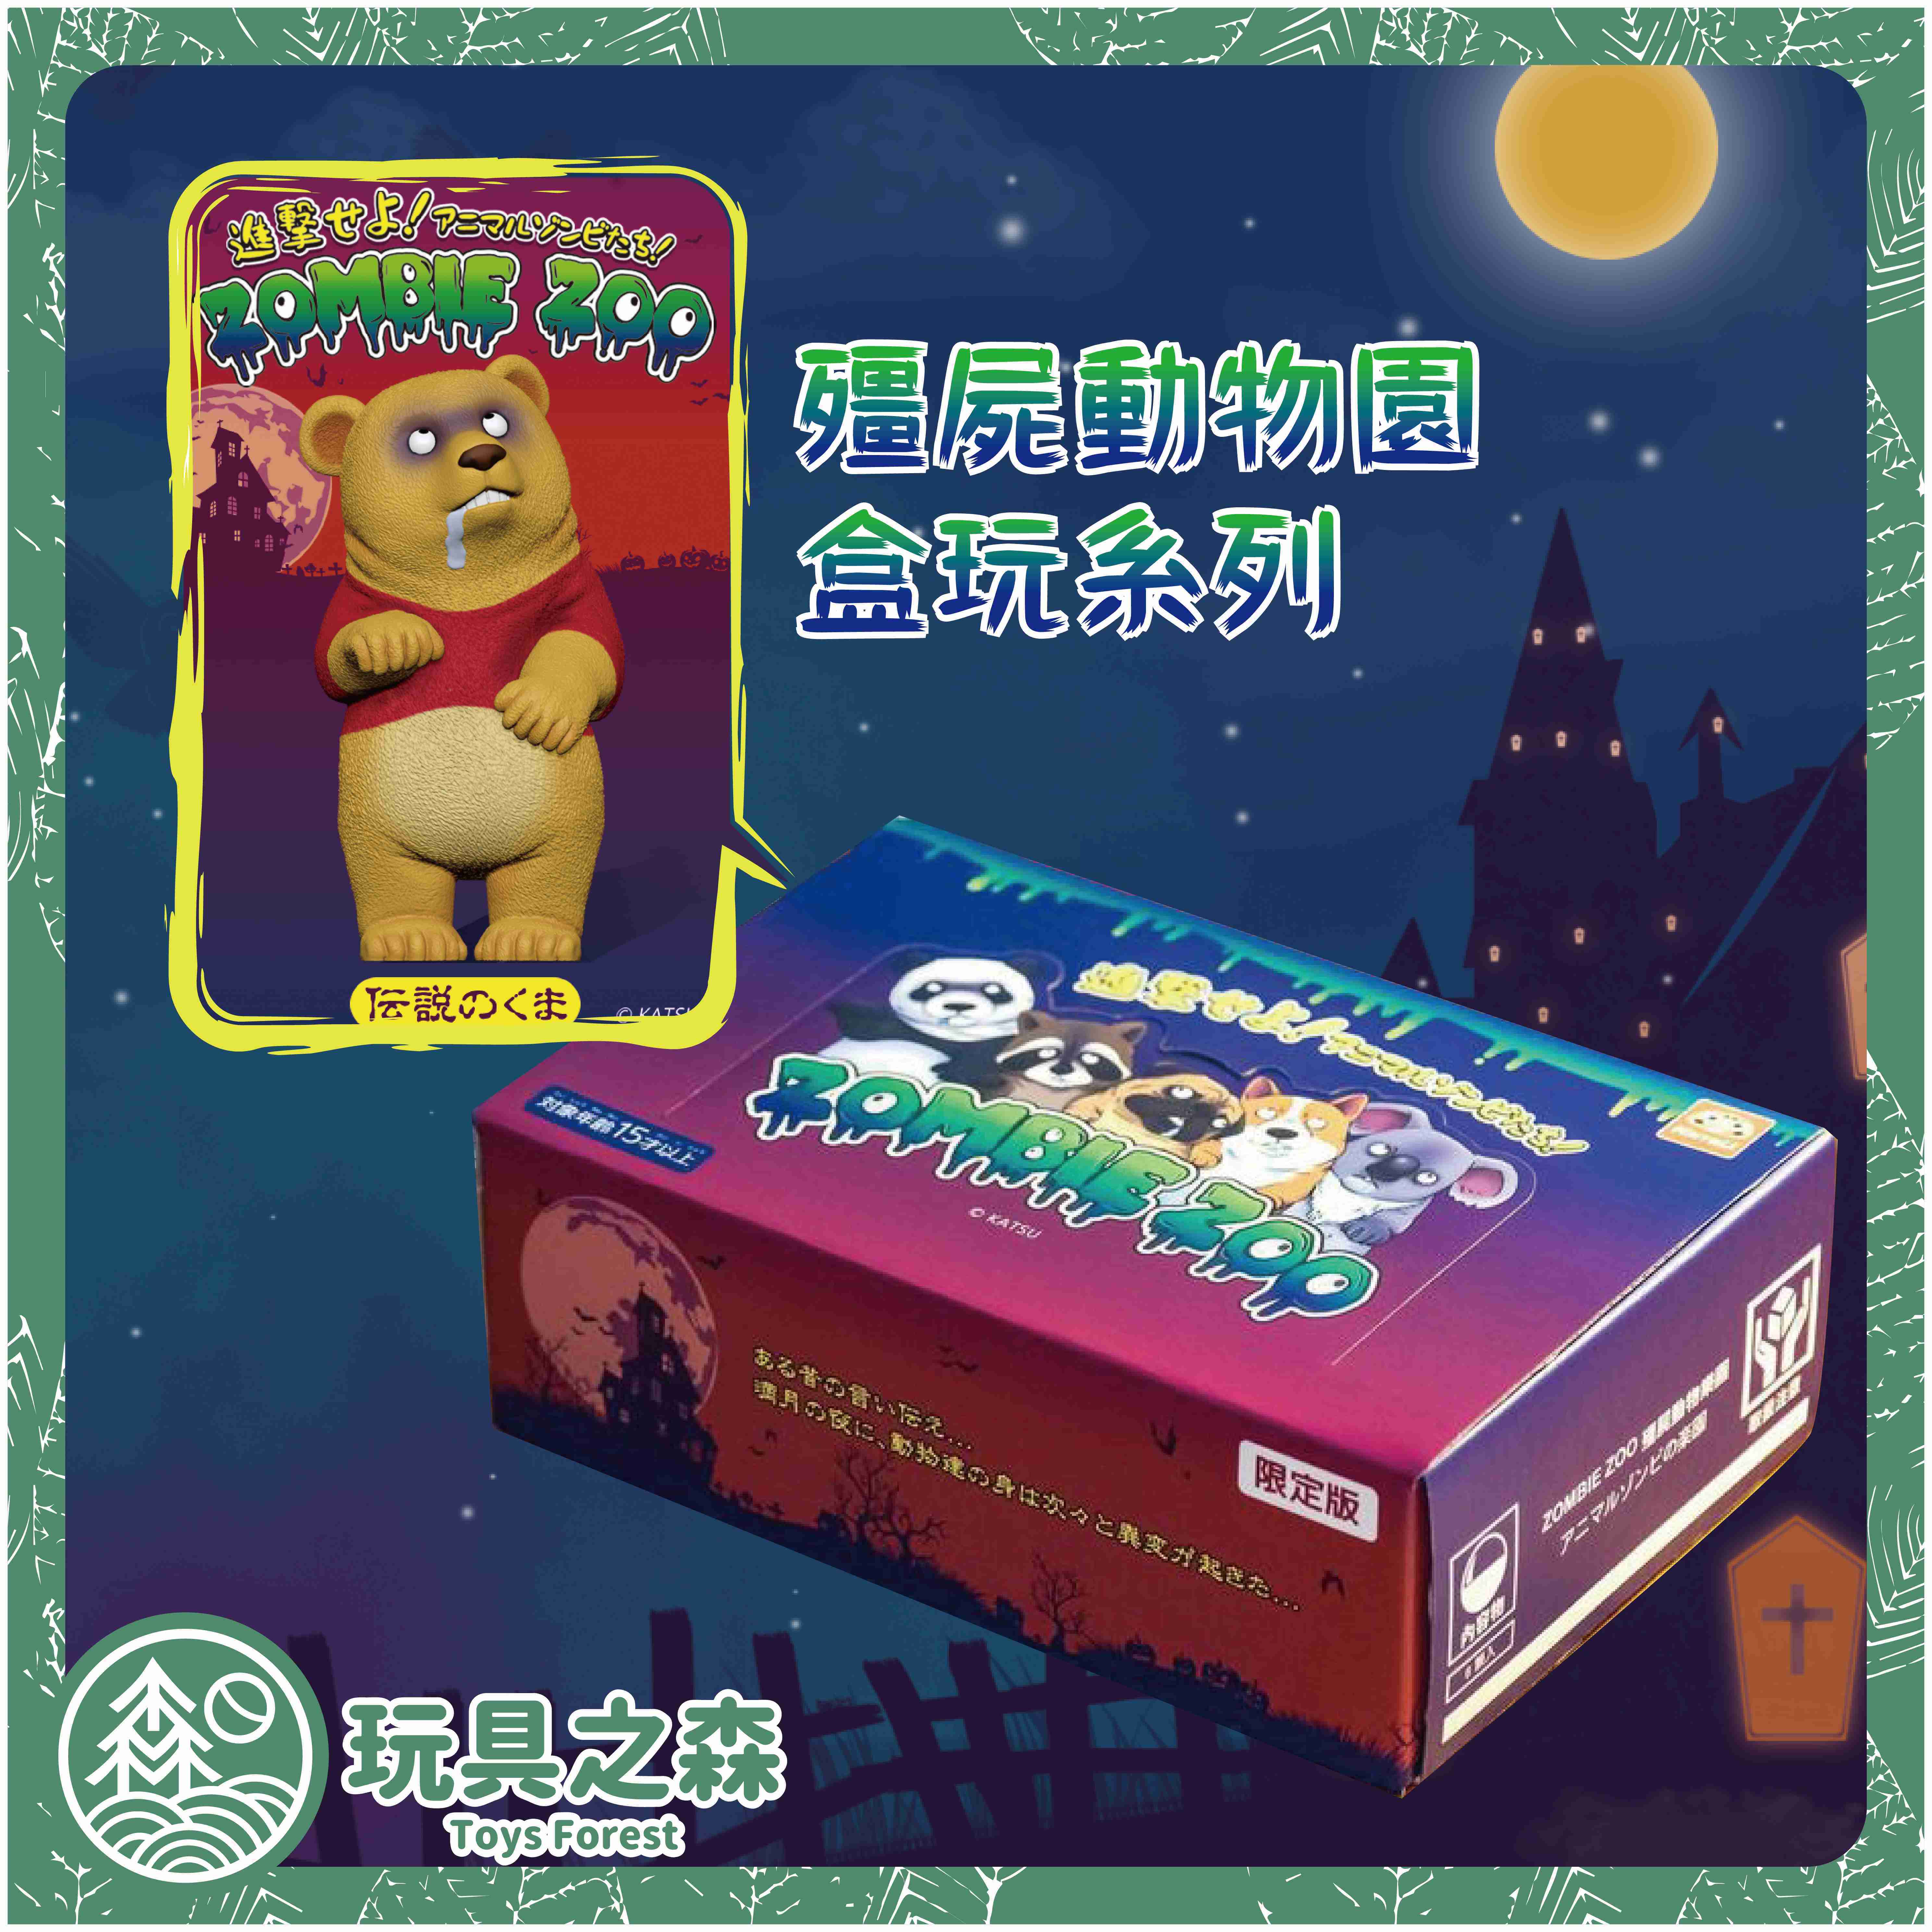 【玩具之森】《現貨》Katsu - 殭屍動物園盒玩 ZOMBIE ZOO 扭蛋 轉蛋 (一中盒六入出售/內含維尼特別款)